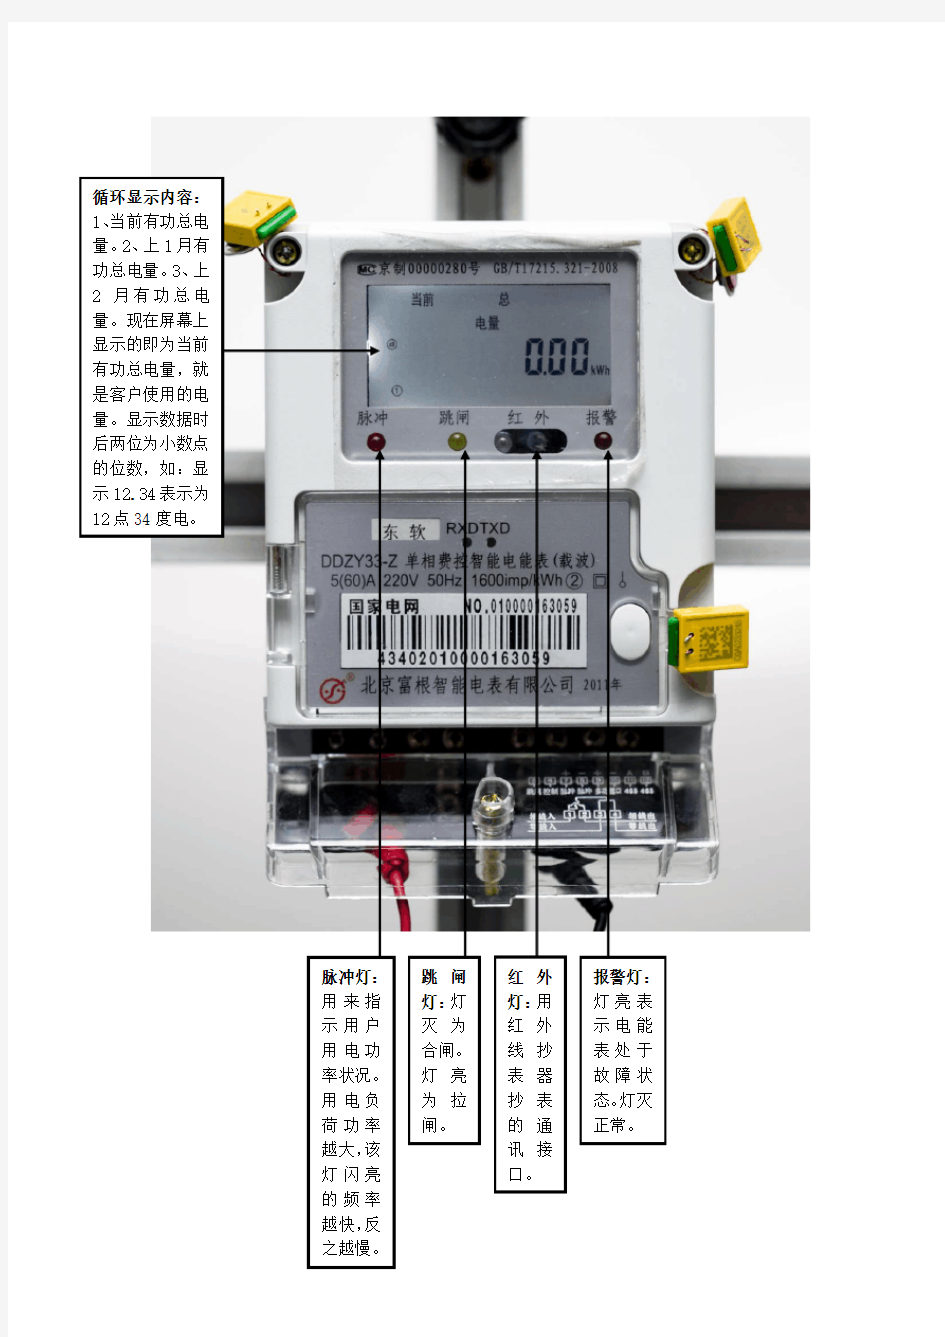 单相费控智能电能表的面板和液晶显示说明